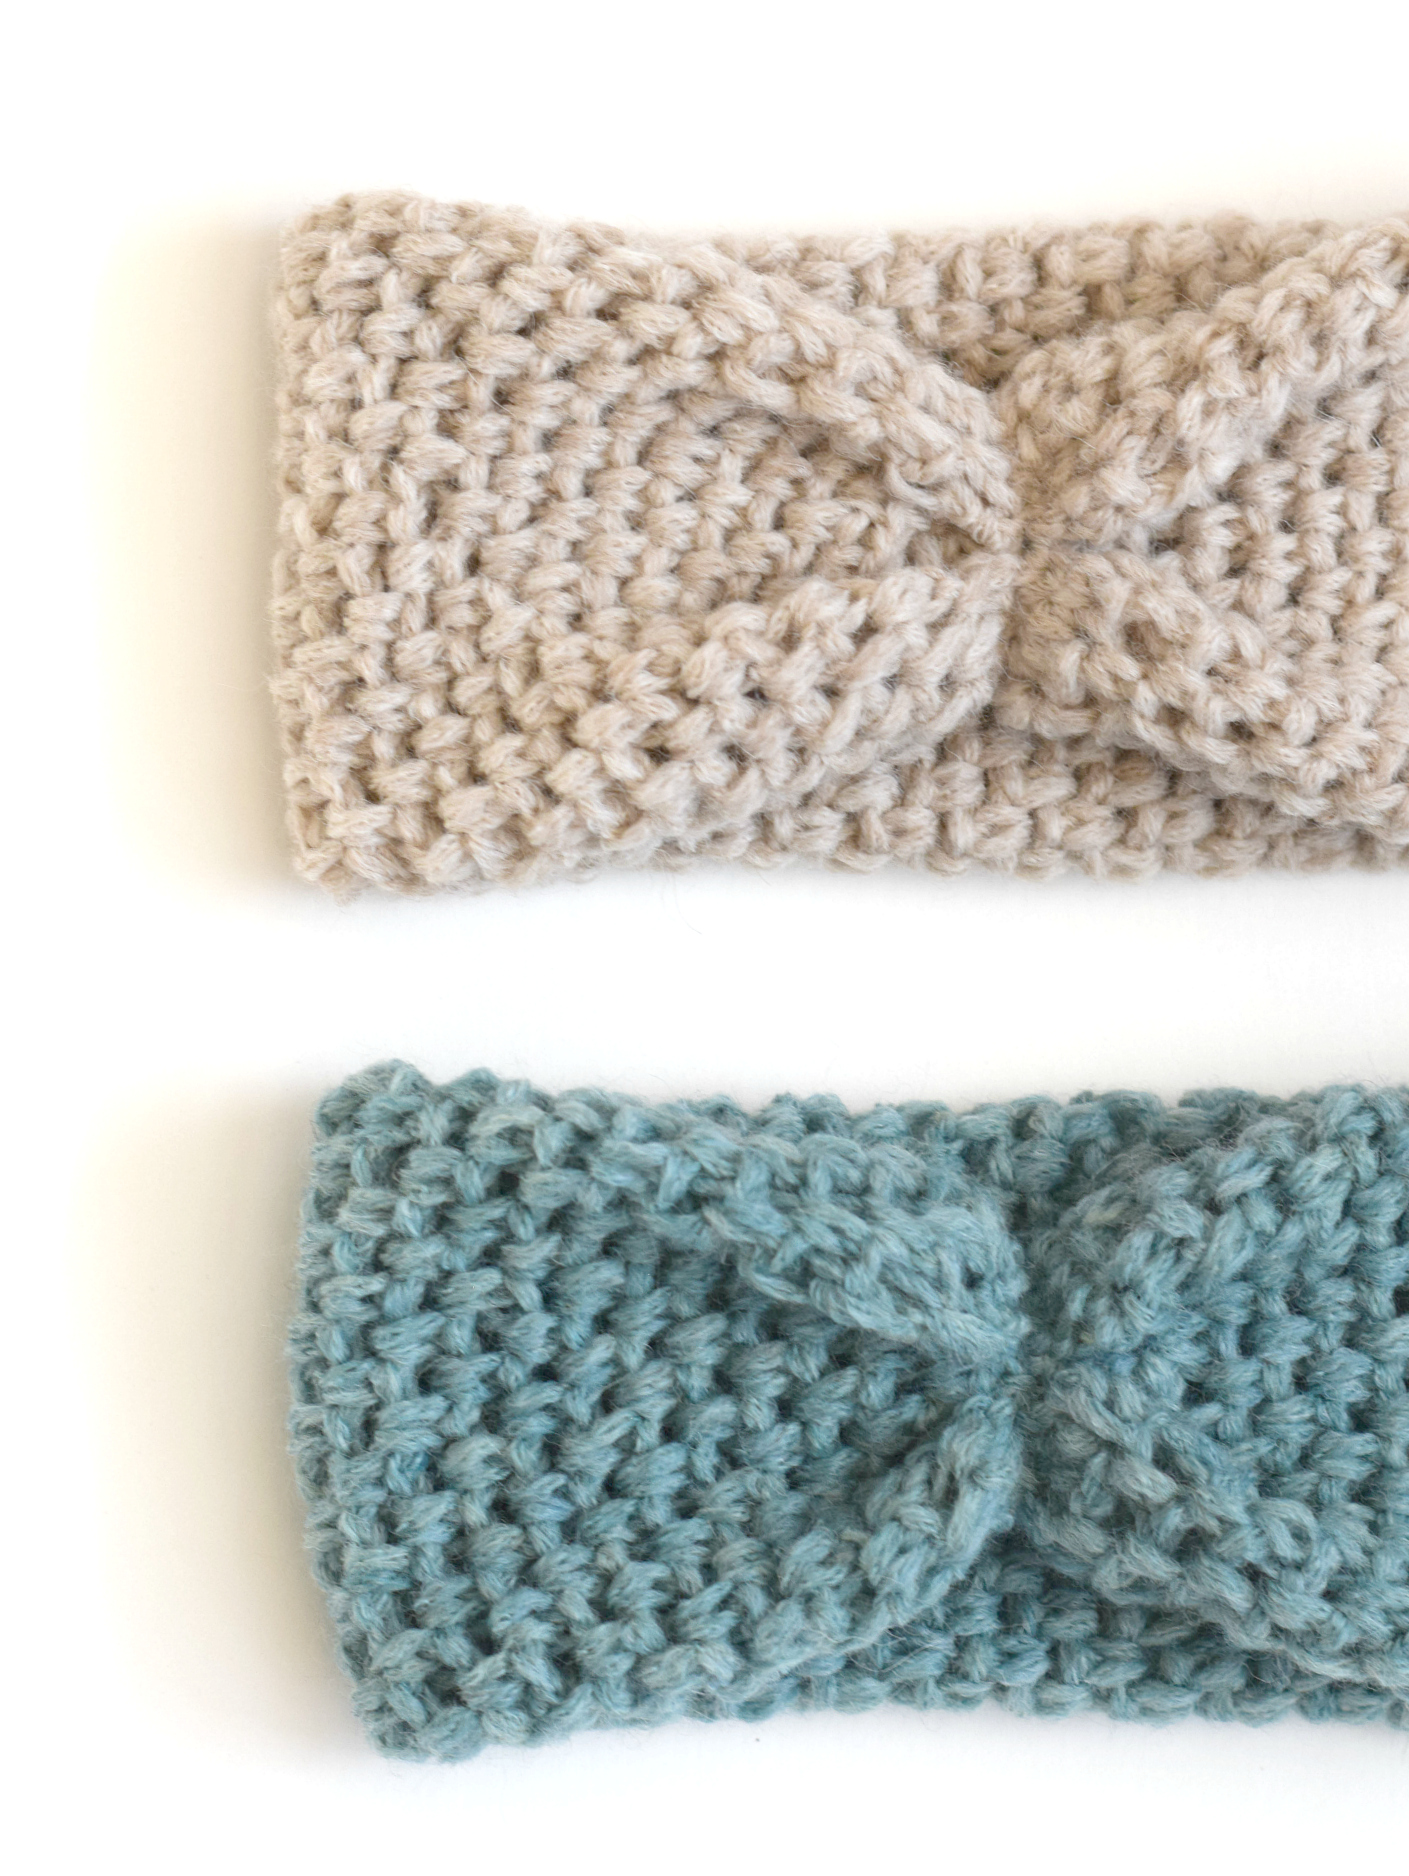 Crochet Twisted Headband free modern crochet pattern!